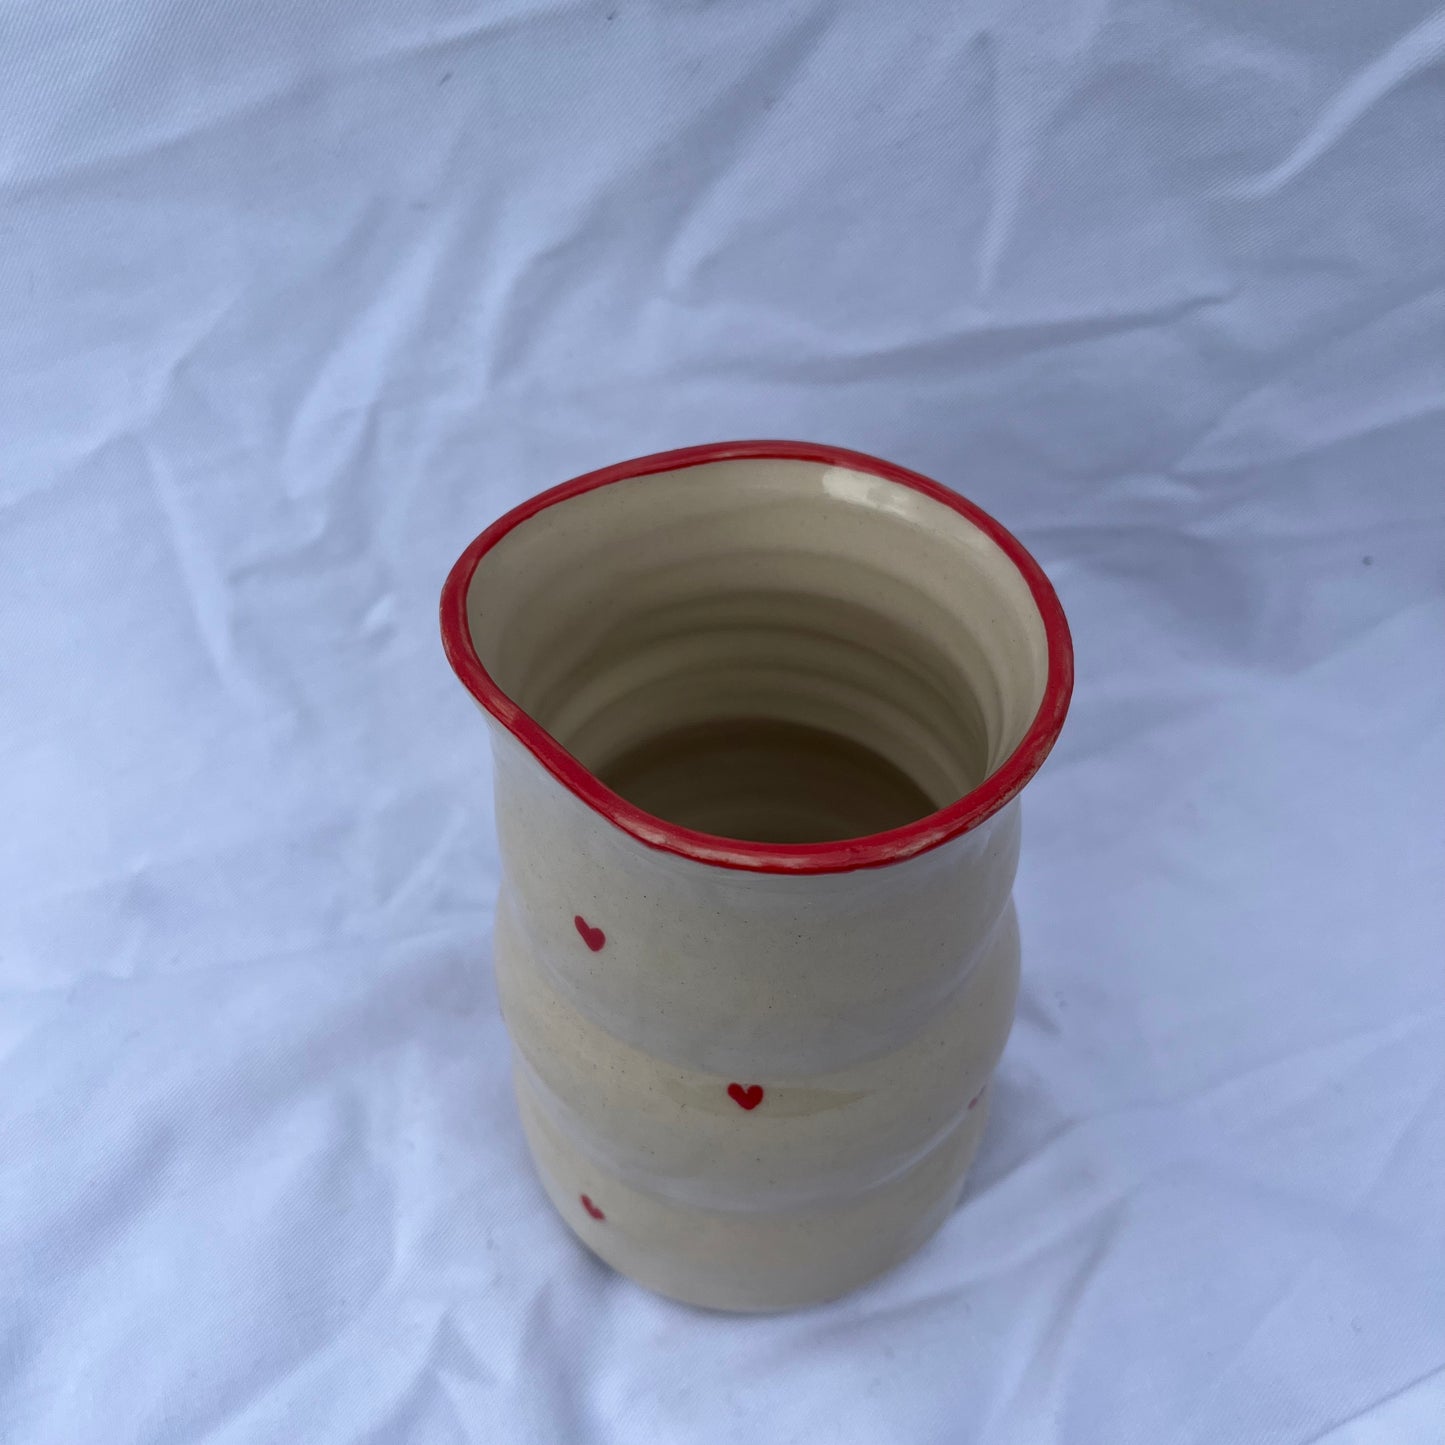 Small bubble heart carafe / jug (red rim)